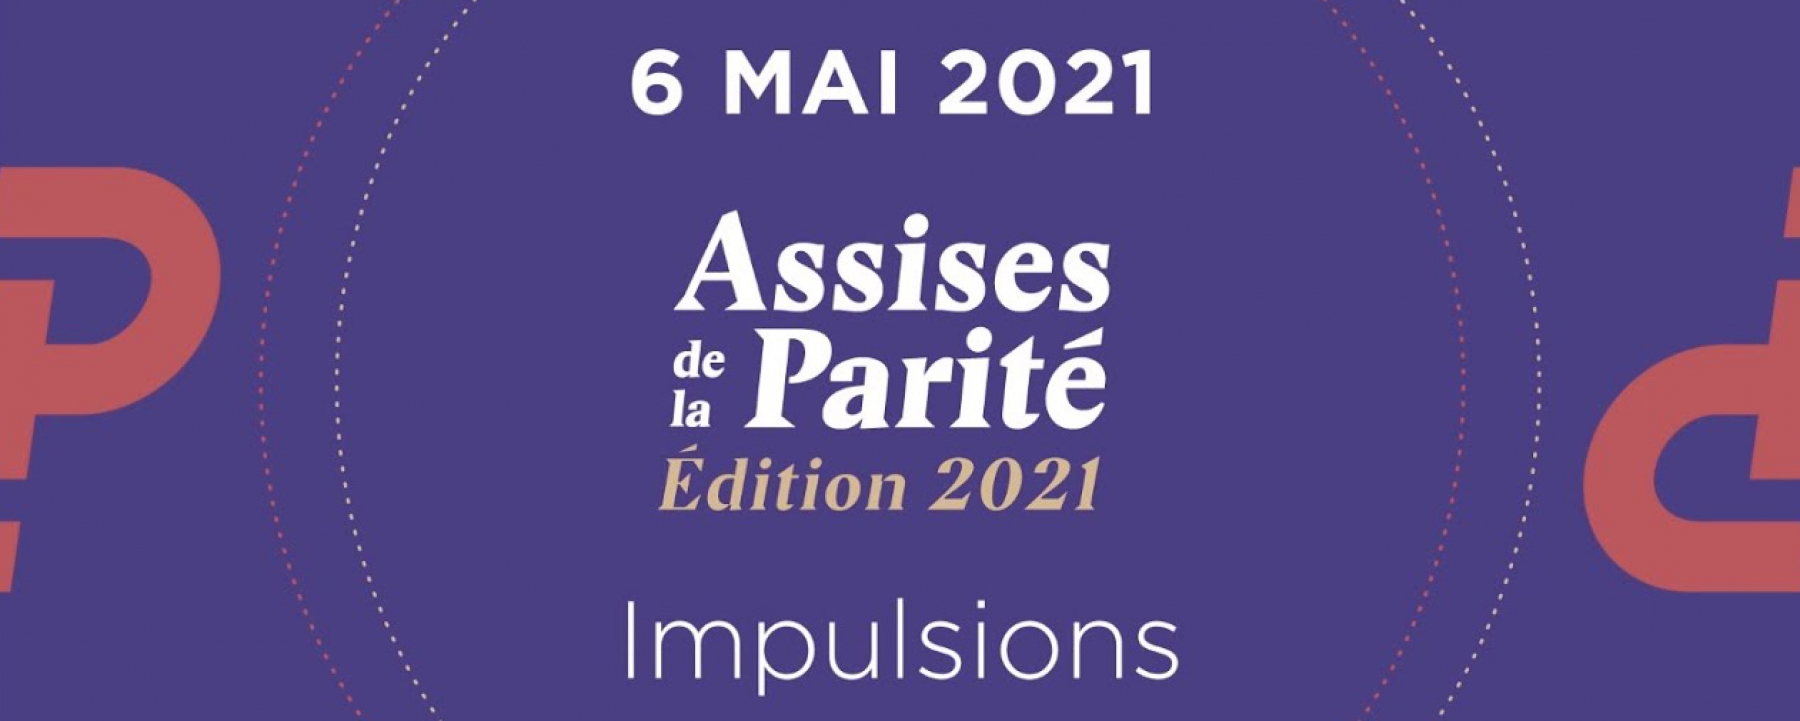 Les Assises de la Parité 2021, organisé le 6 mai 2021 par IWF France